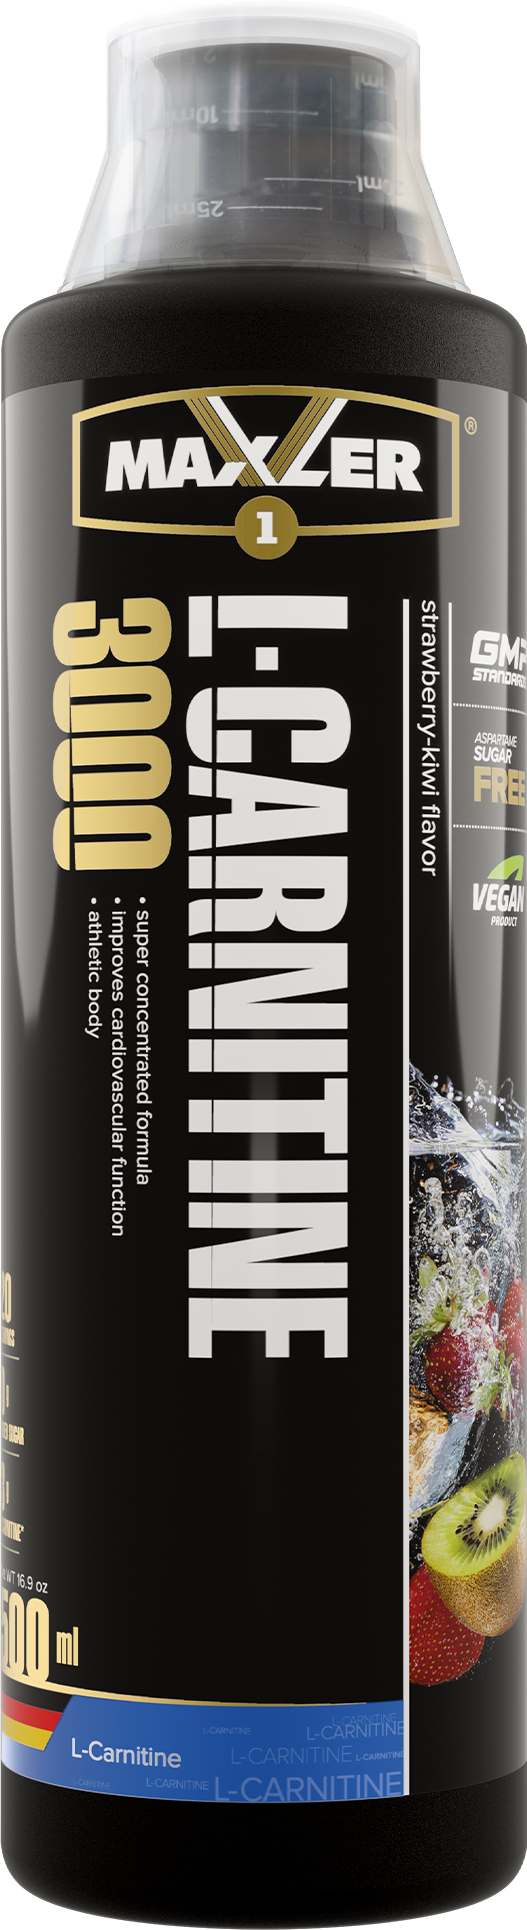 Карнитин Maxler L-Carnitine 3000 мг. 500 ml - Клубника-Киви